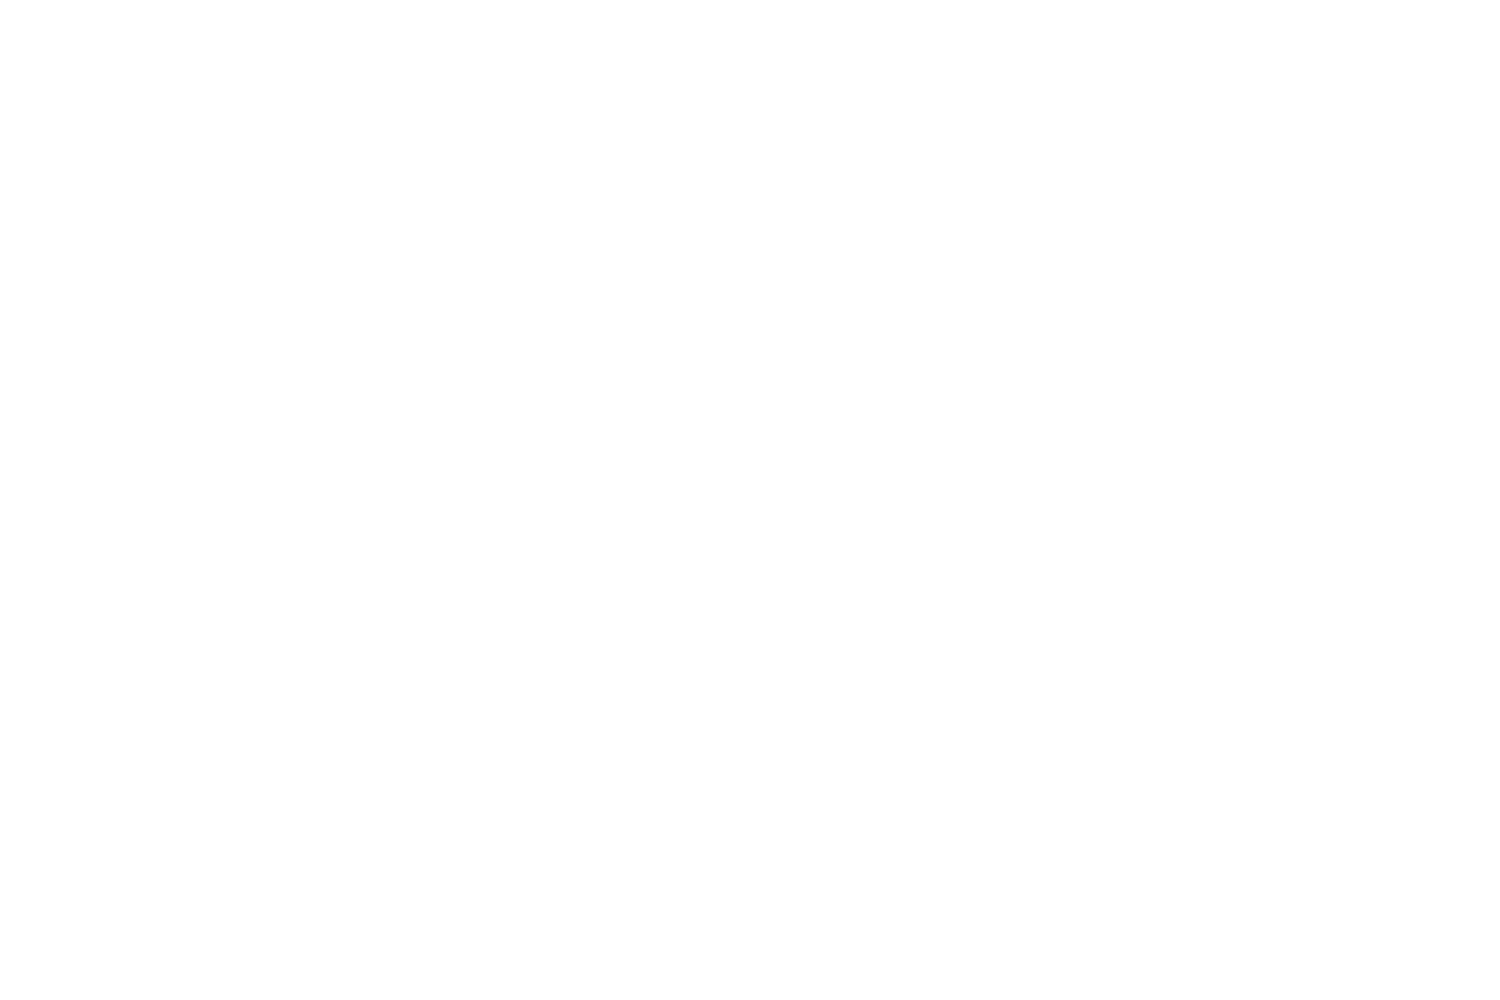 Dupont Pro